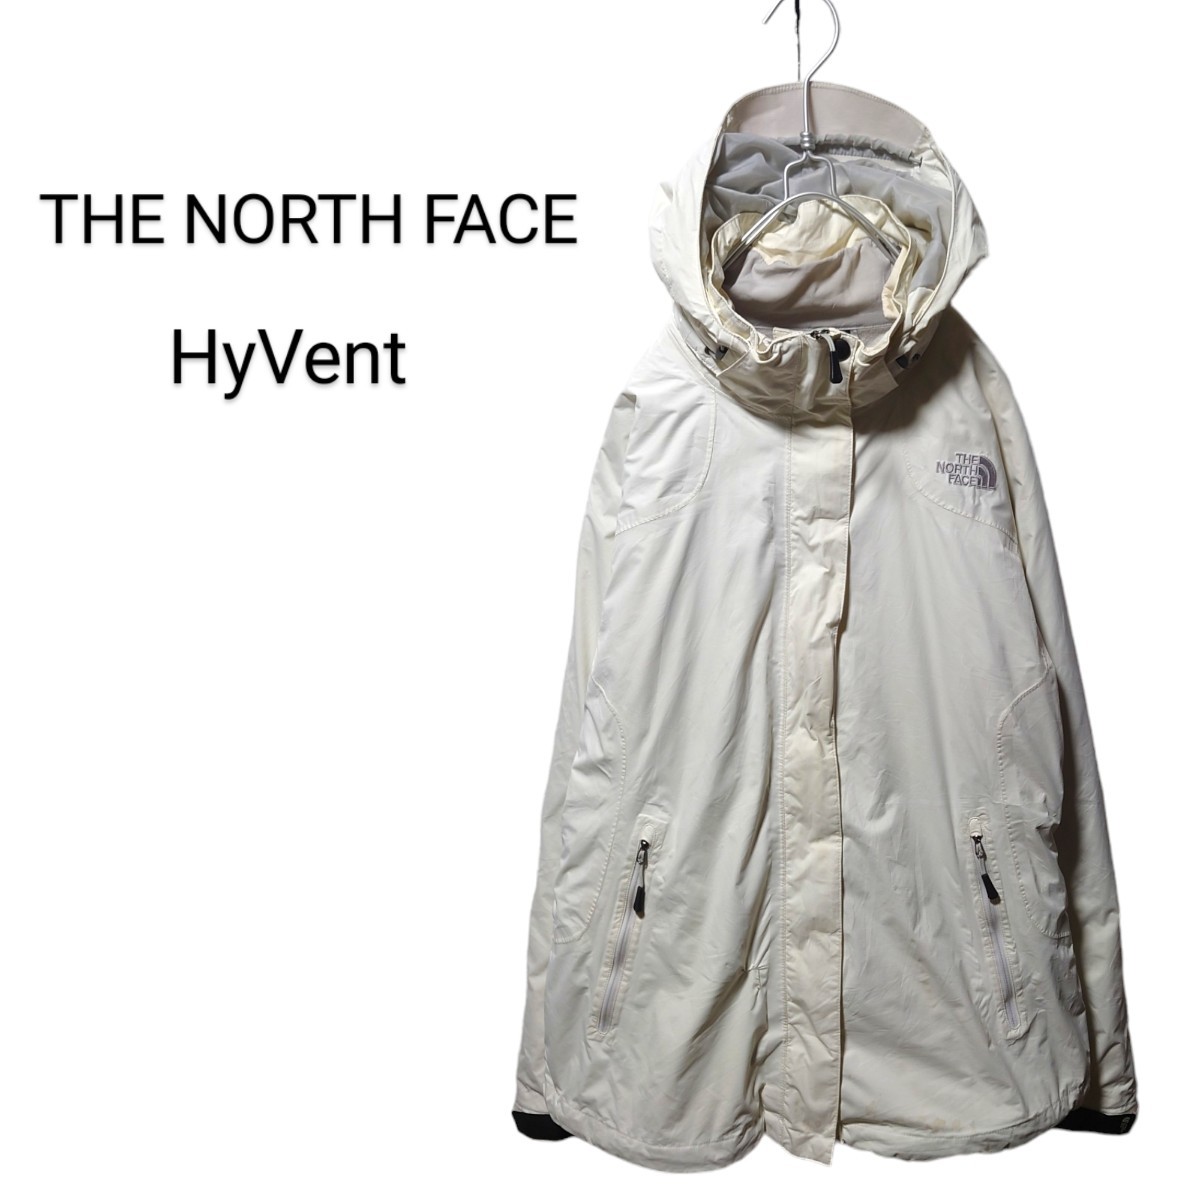 【THE NORTH FACE】HyVent スキースノボーウェア S-371